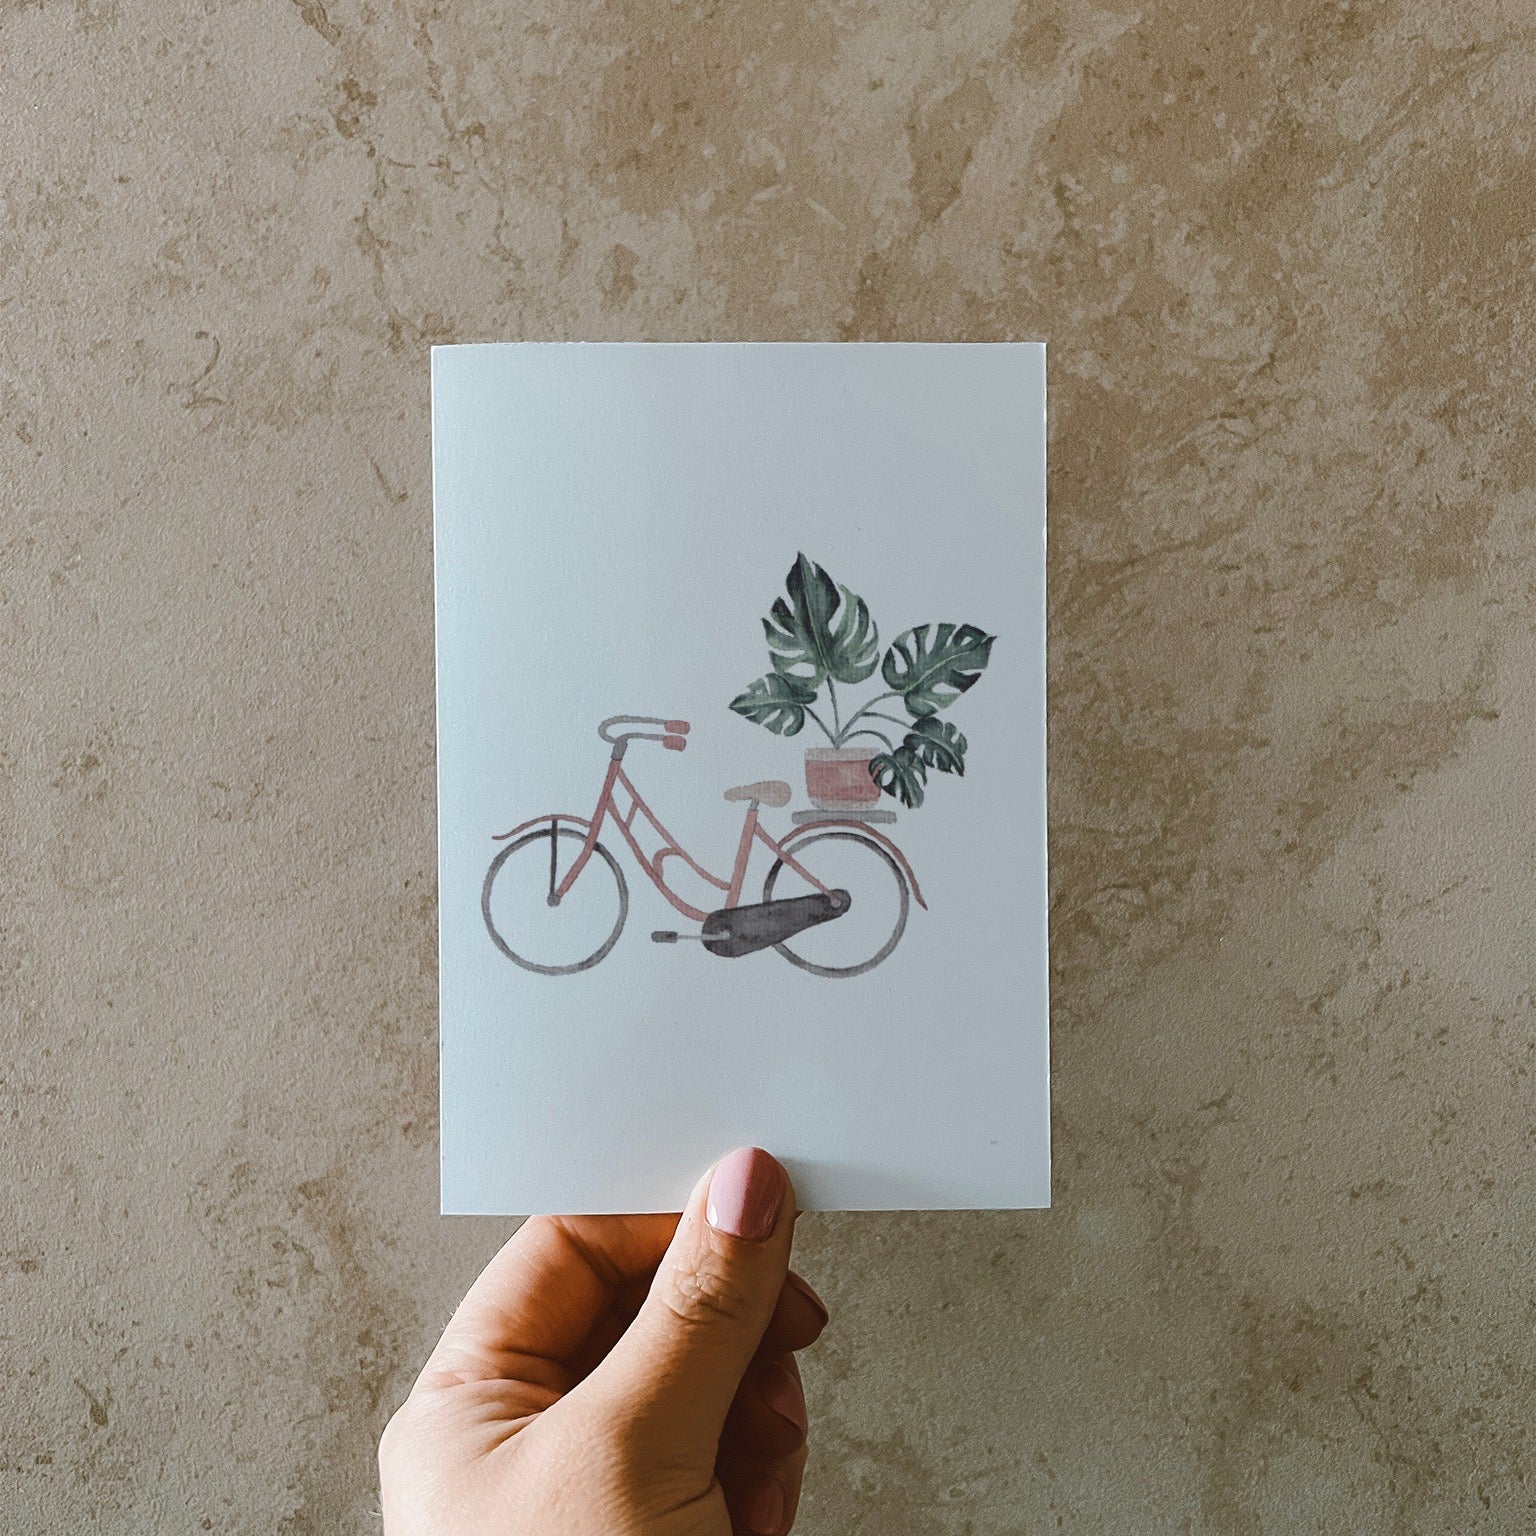 Postkarte DIN A6, Hochformat, gedruckt in Deutschland. Eine Monstera im rosa-beigen Blumentopf, welcher sich auf einem Gepäckträger eines rosa Fahrrads befindet.Postkarte DIN A6, Hochformat, gedruckt in Deutschland. Eine Monstera im rosa-beigen Blumentopf, welcher sich auf einem Gepäckträger eines rosa Fahrrads befindet.